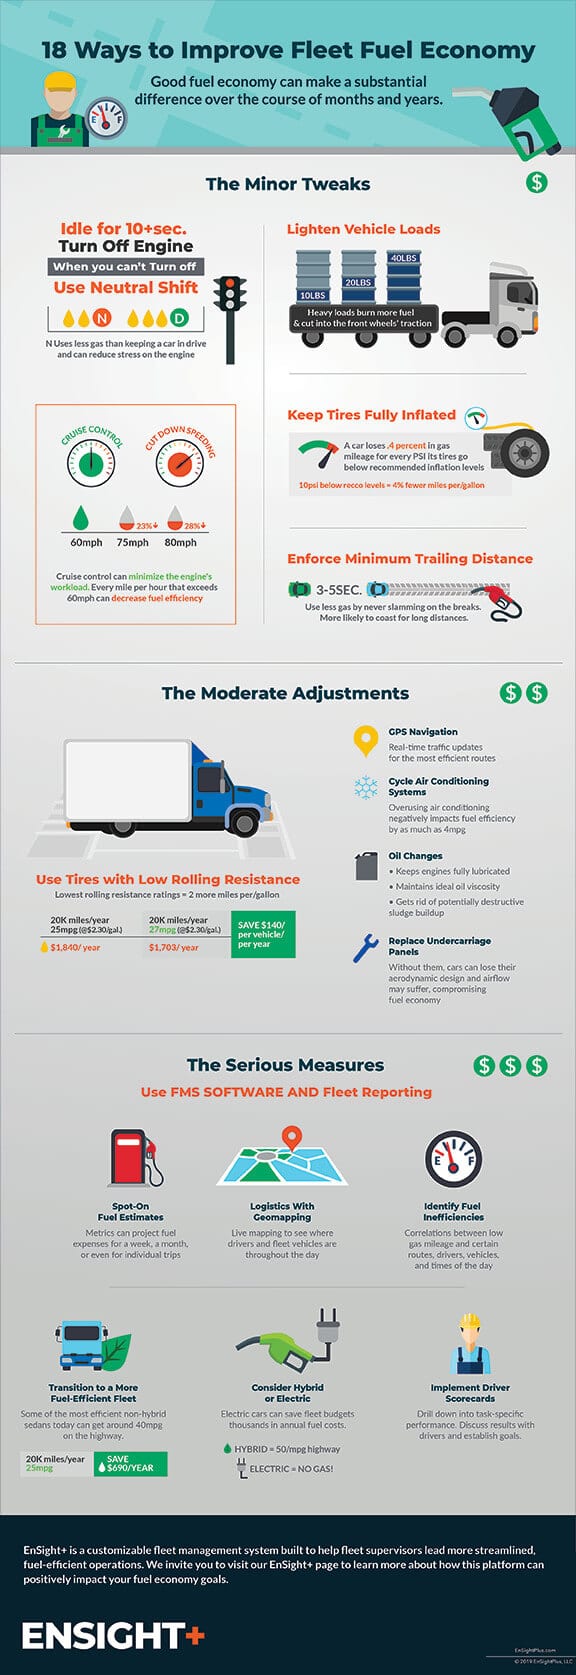 EnSightPlus Infographic: 18 Ways Improve Fleet Economy 